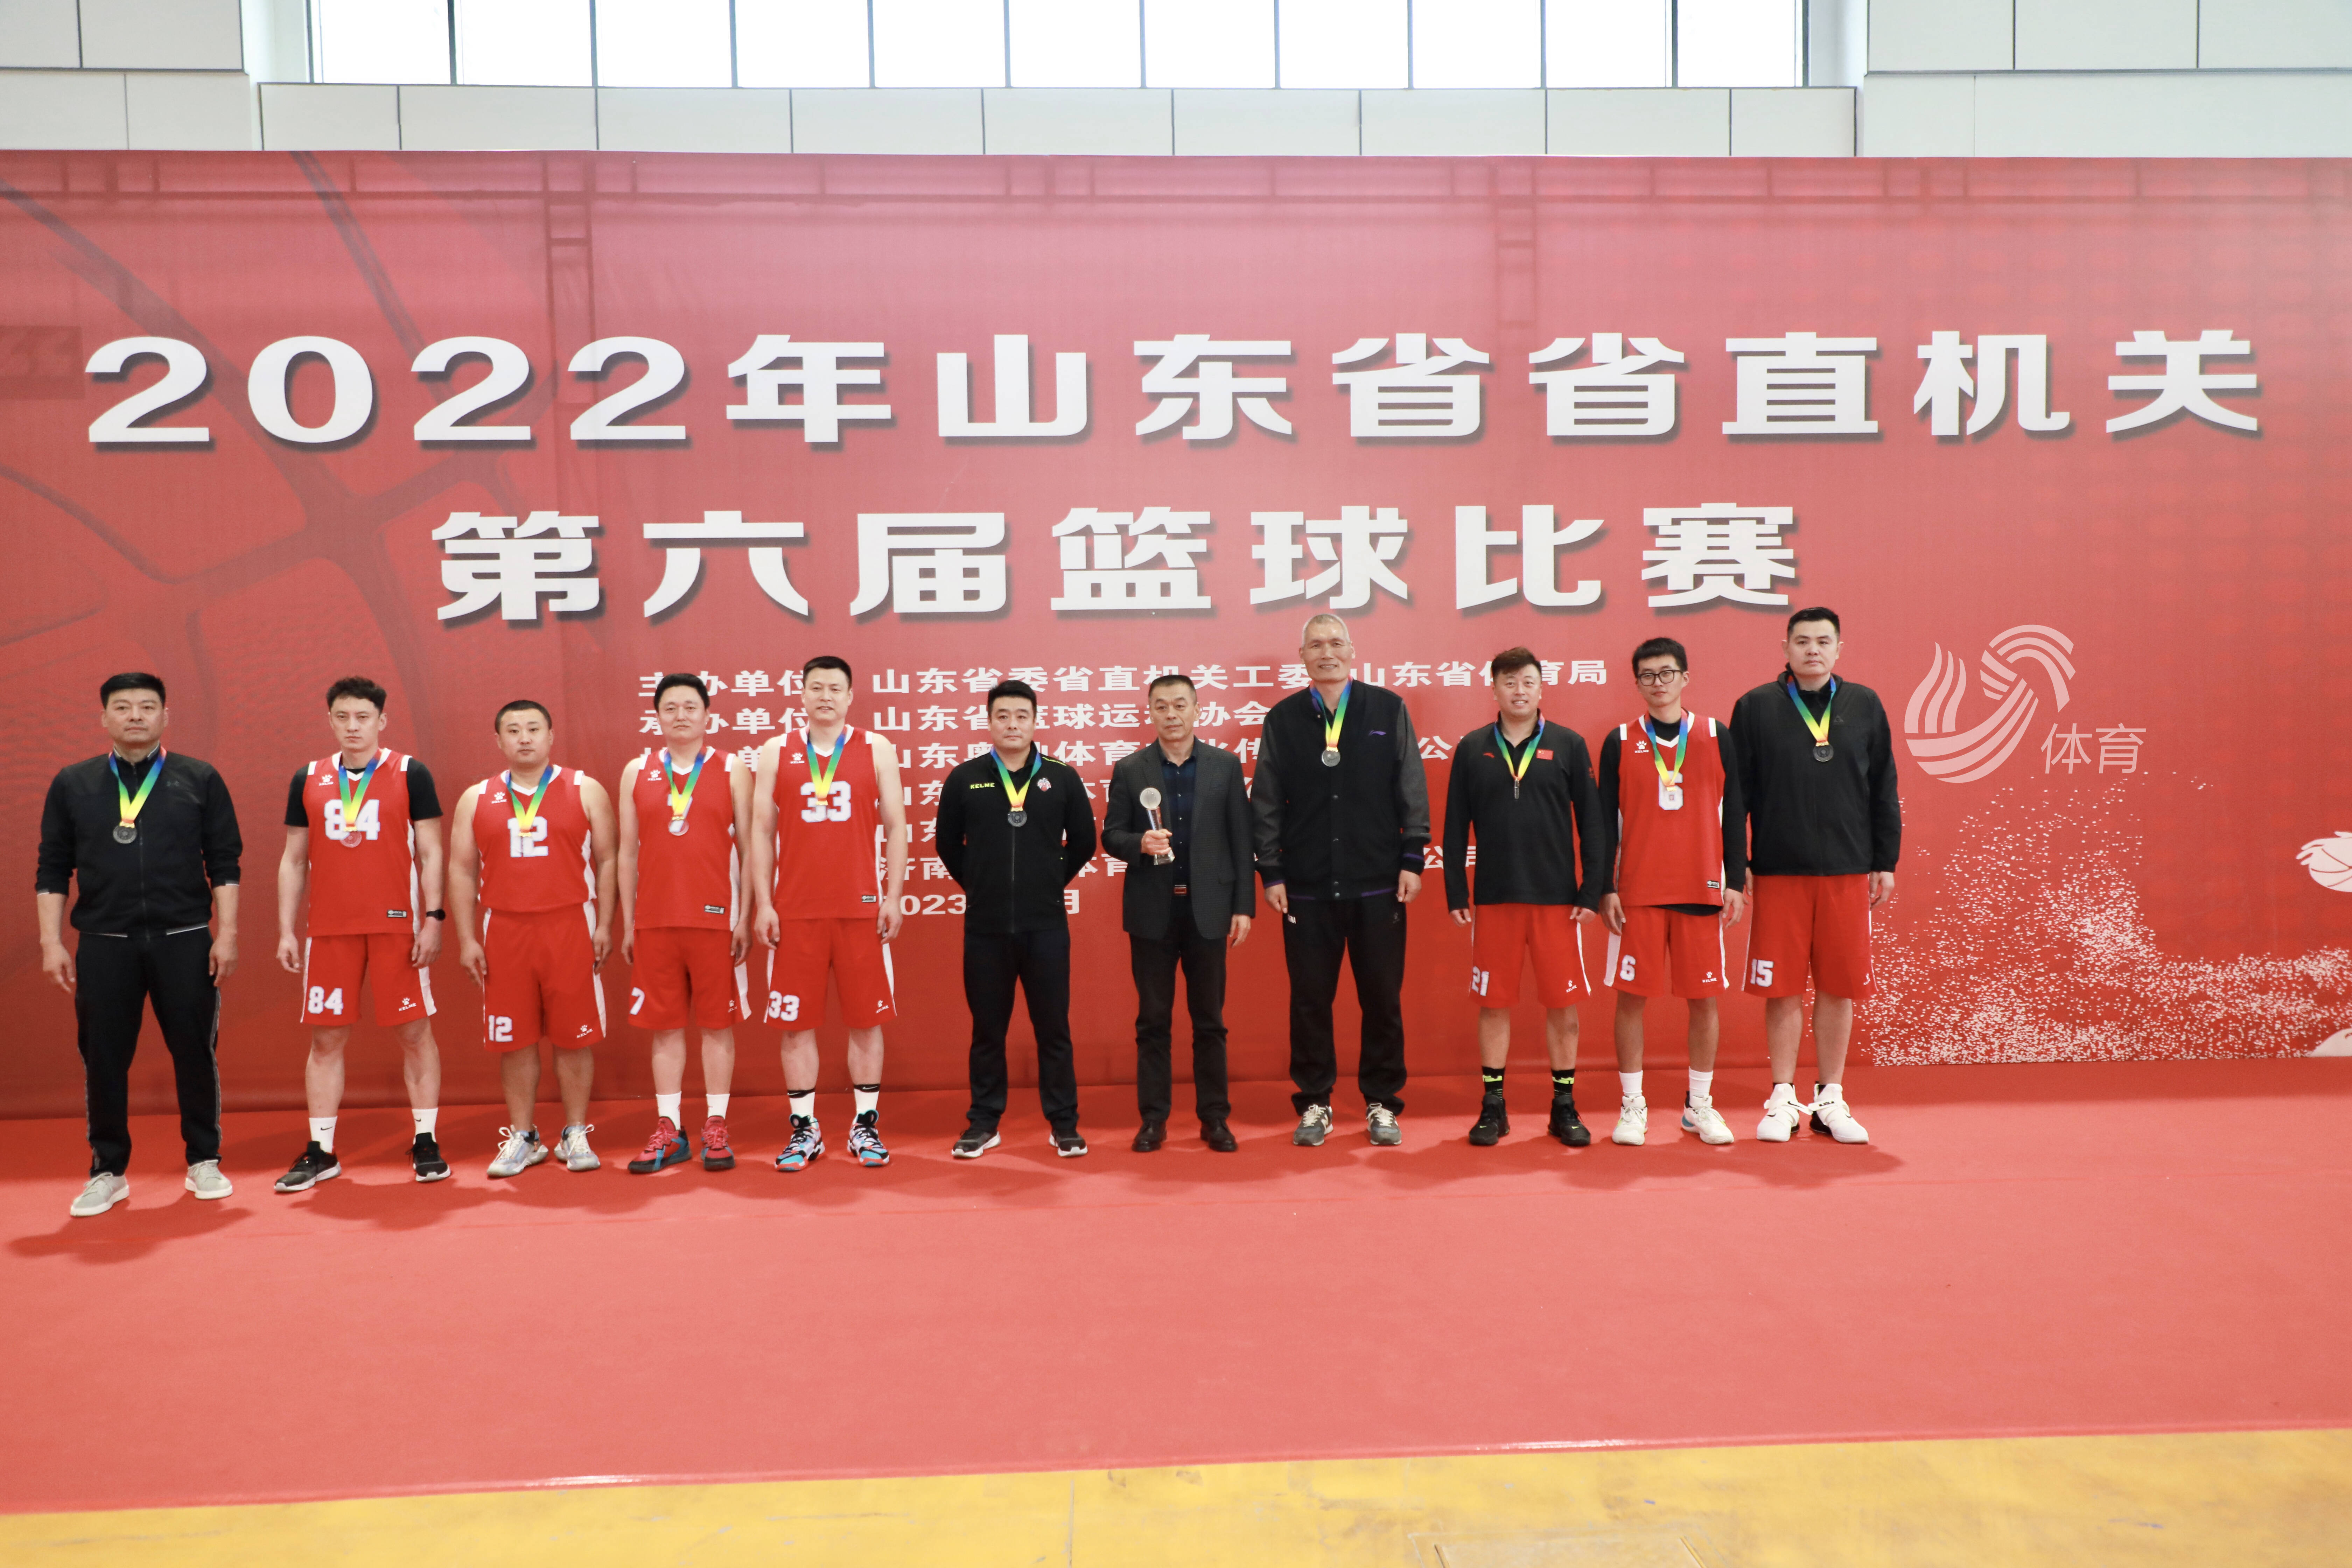 山东省省直机关第六届篮球比赛圆满落幕